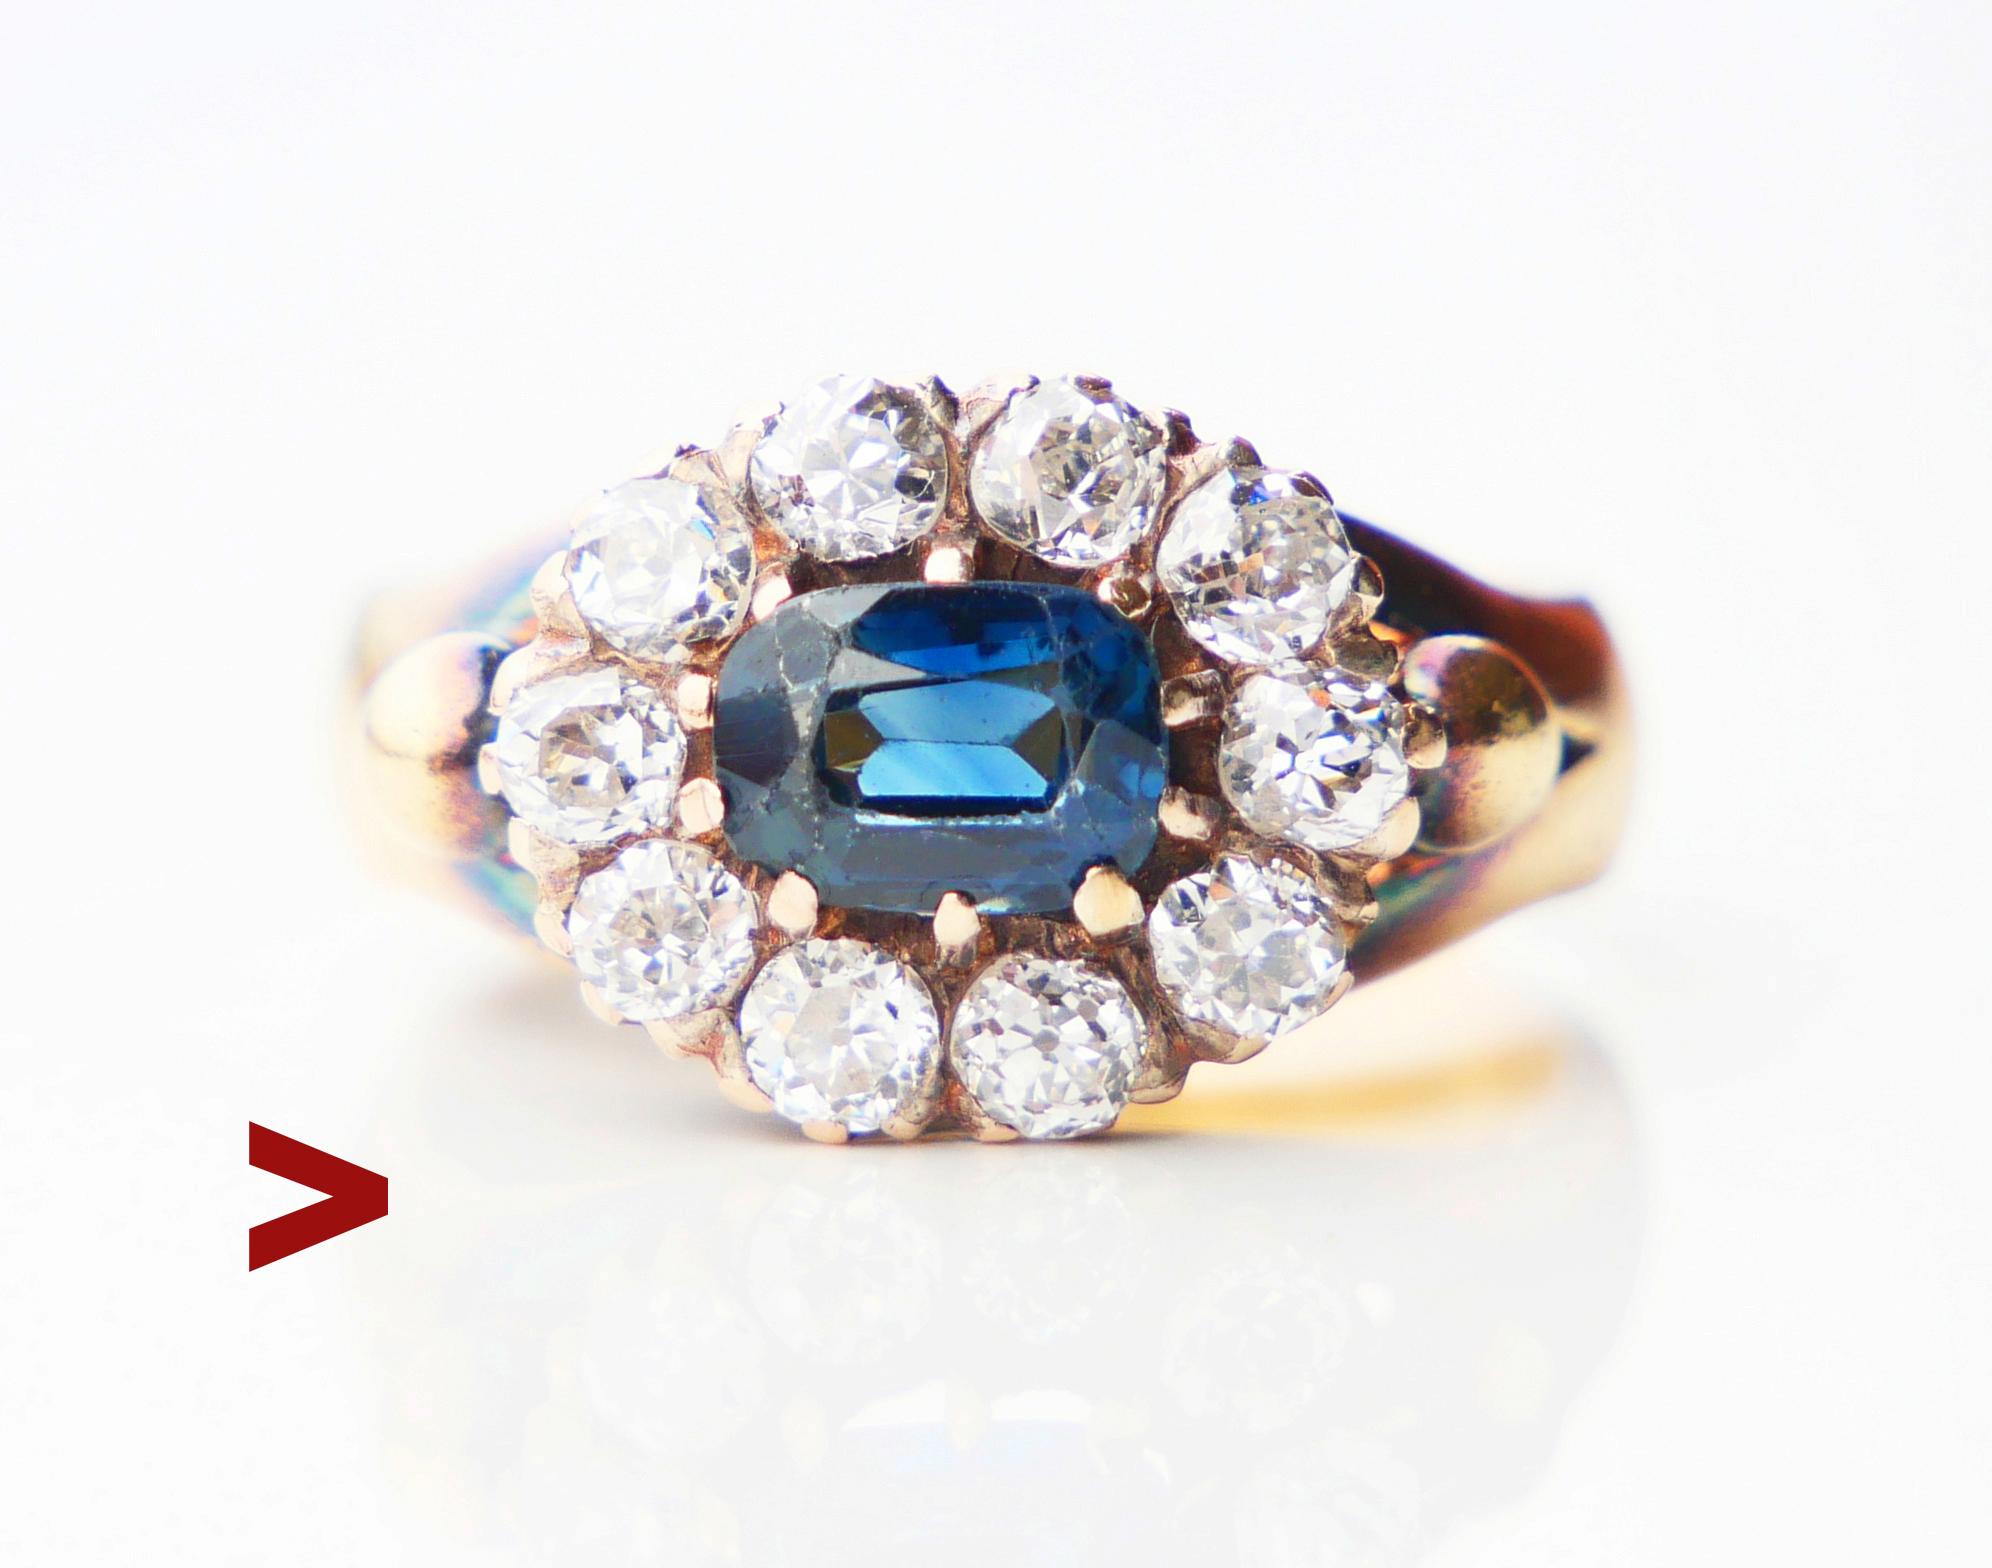 Schöner alter Halo-Ring, Band und Krone aus massivem 18K Gold mit natürlichem blauem Saphir und 10 alten Diamanten im europäischen Schliff.

Dieser Ring stammt aus DK, handgefertigt ca. 1920er -1930er Jahre. Nicht gestempelt, Metall getestet